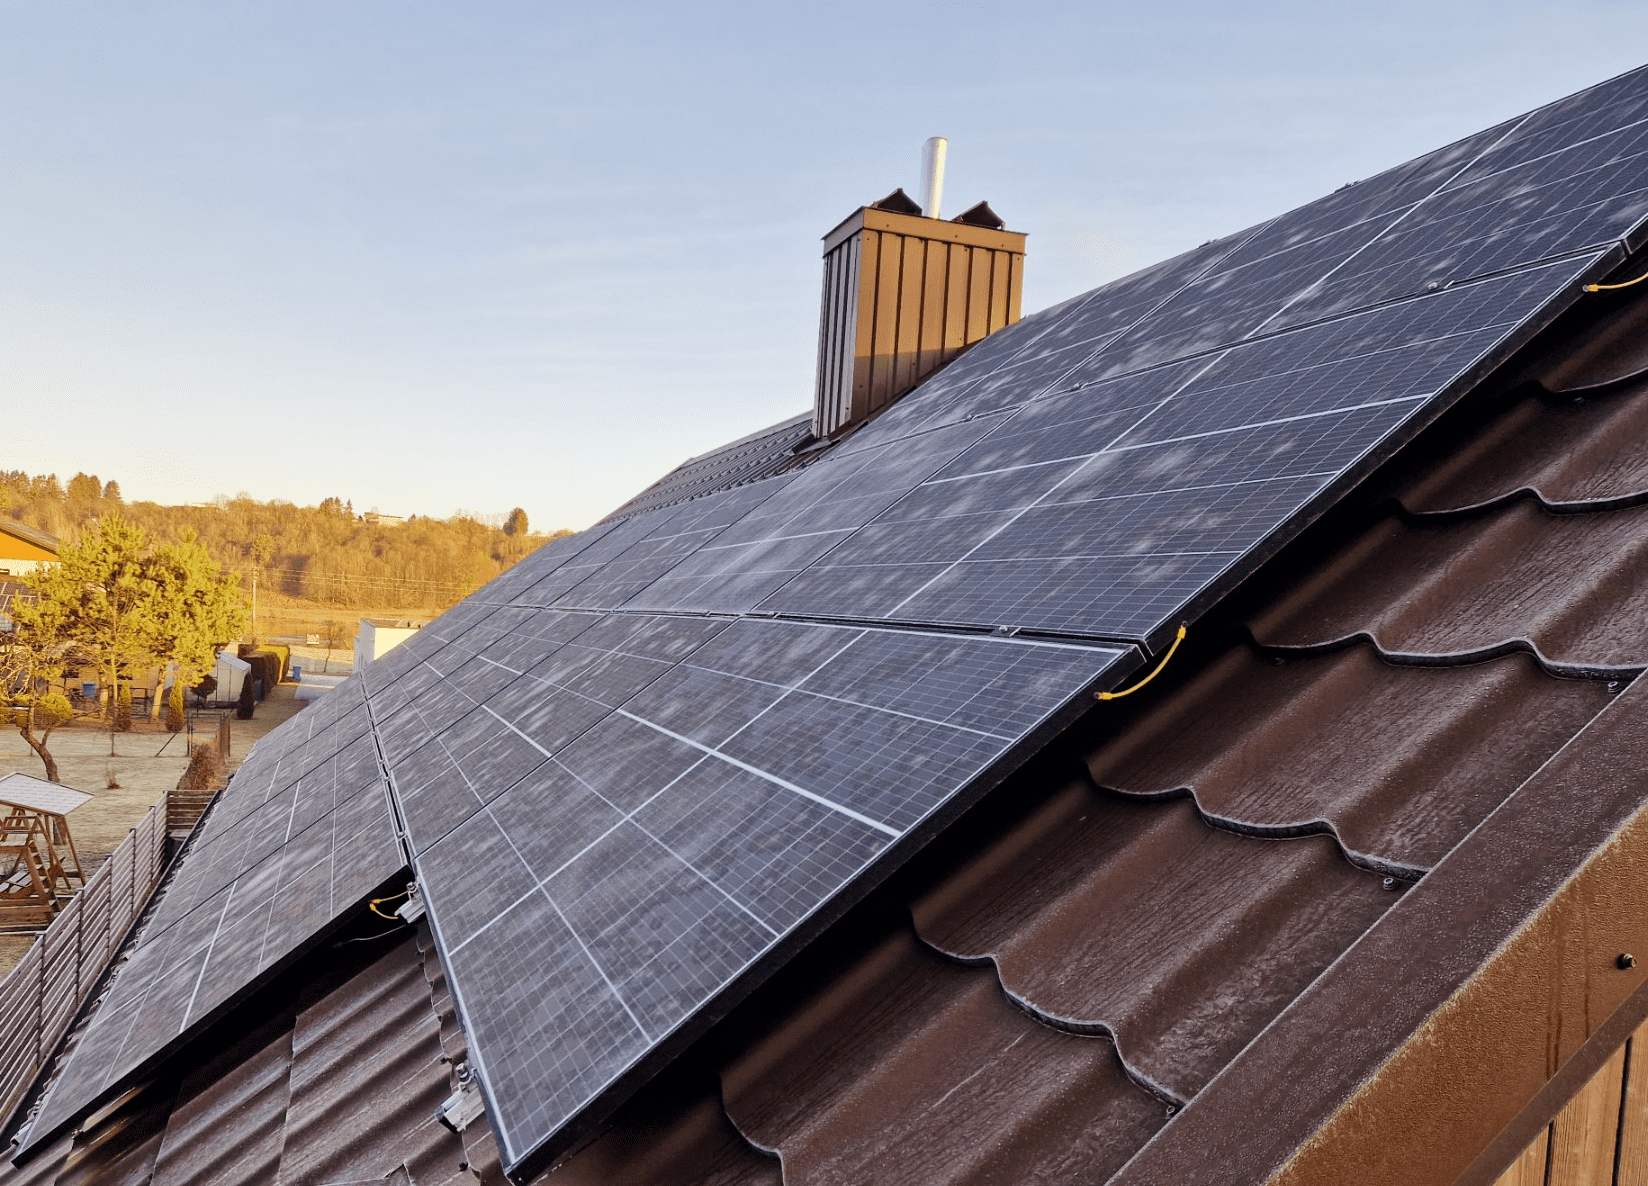 Sumontuota saulės elektrinės ant stogo | VisasLabas 